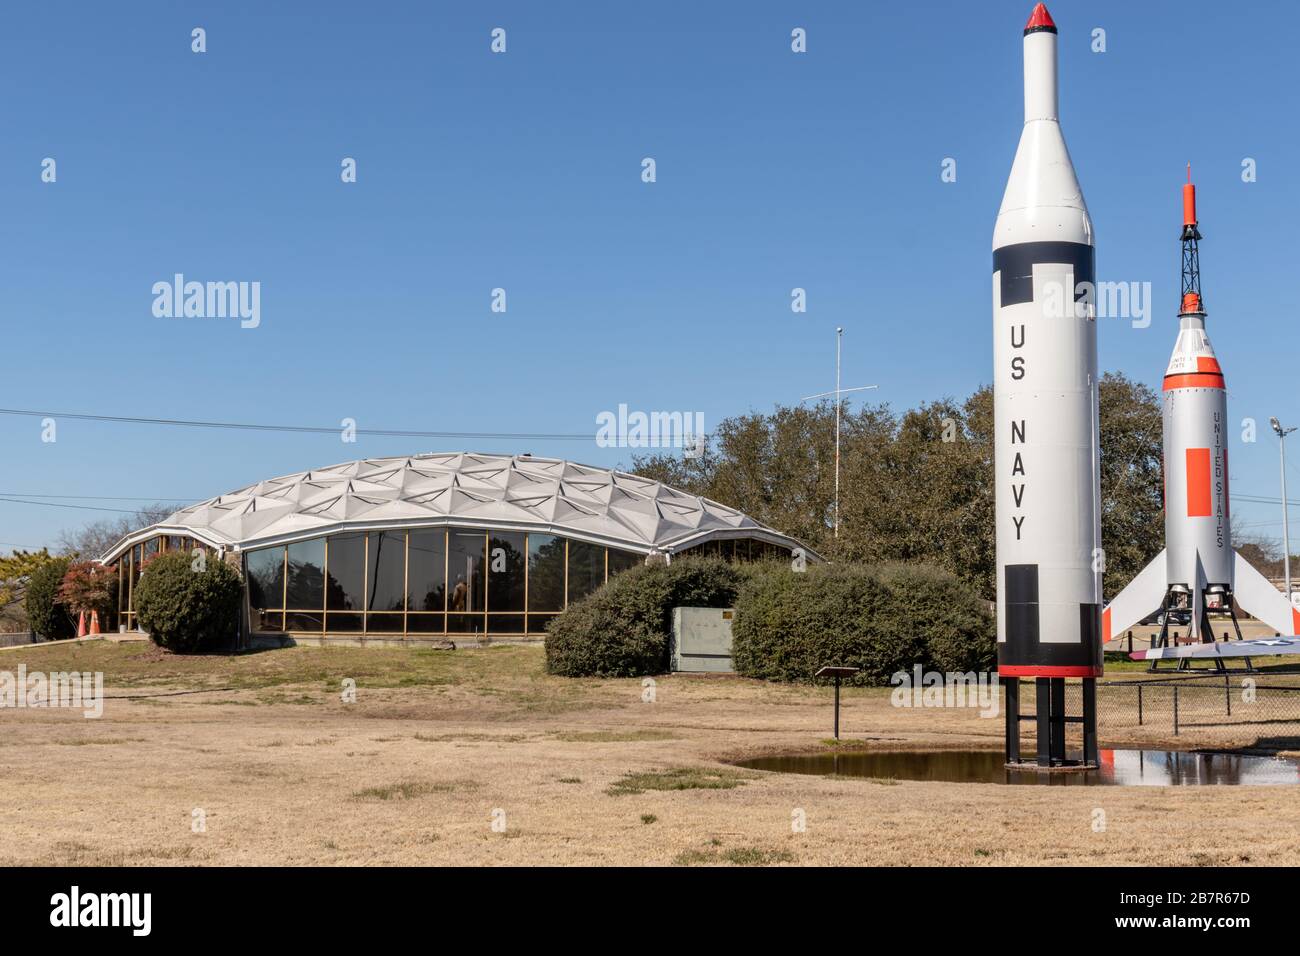 Hampton,va/USA-1 mars 2020: La fusée de rappel Mercury Little Joe et un missile Nike exposés dans Air Power Park près de la base aérienne de Langley. Banque D'Images